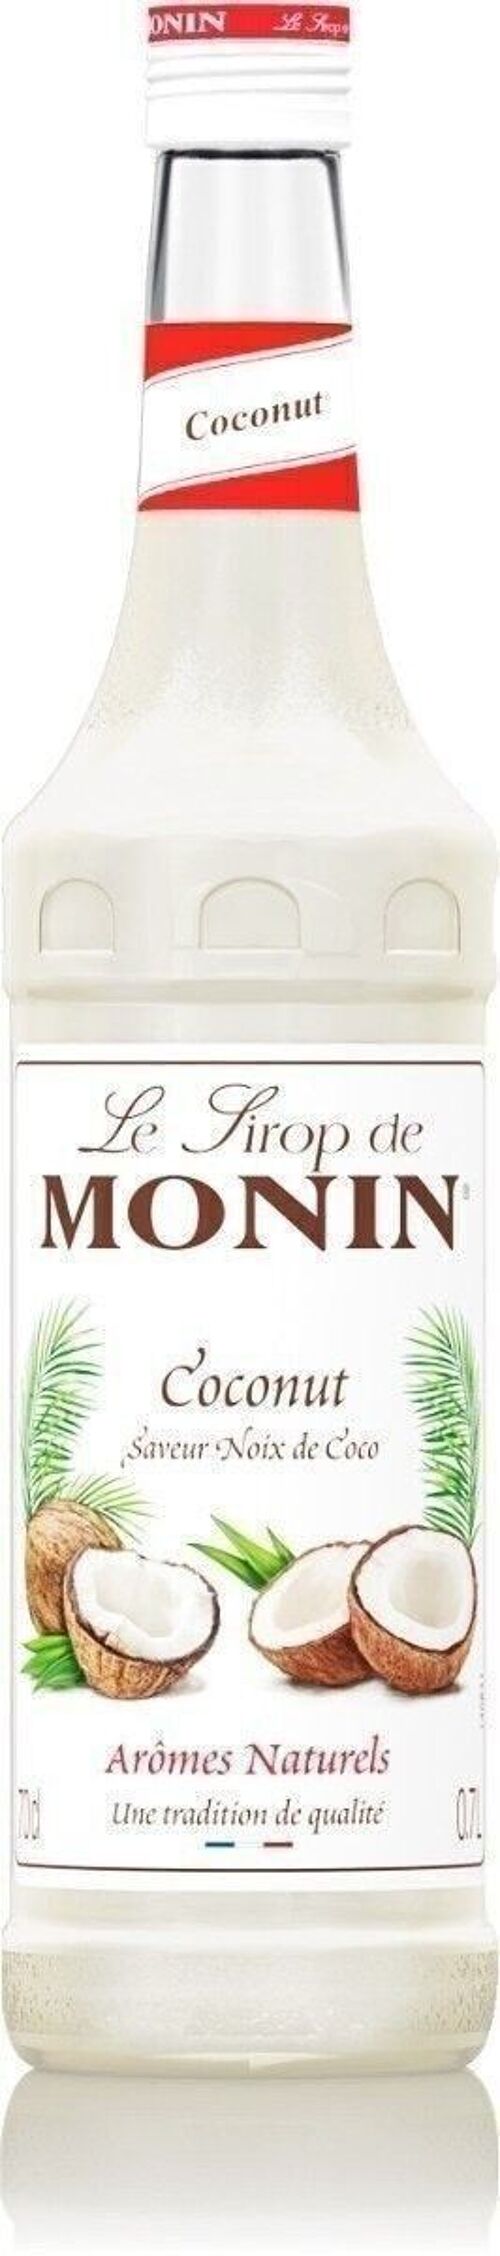 Sirop de Coco MONIN - Arômes naturels - 70cl